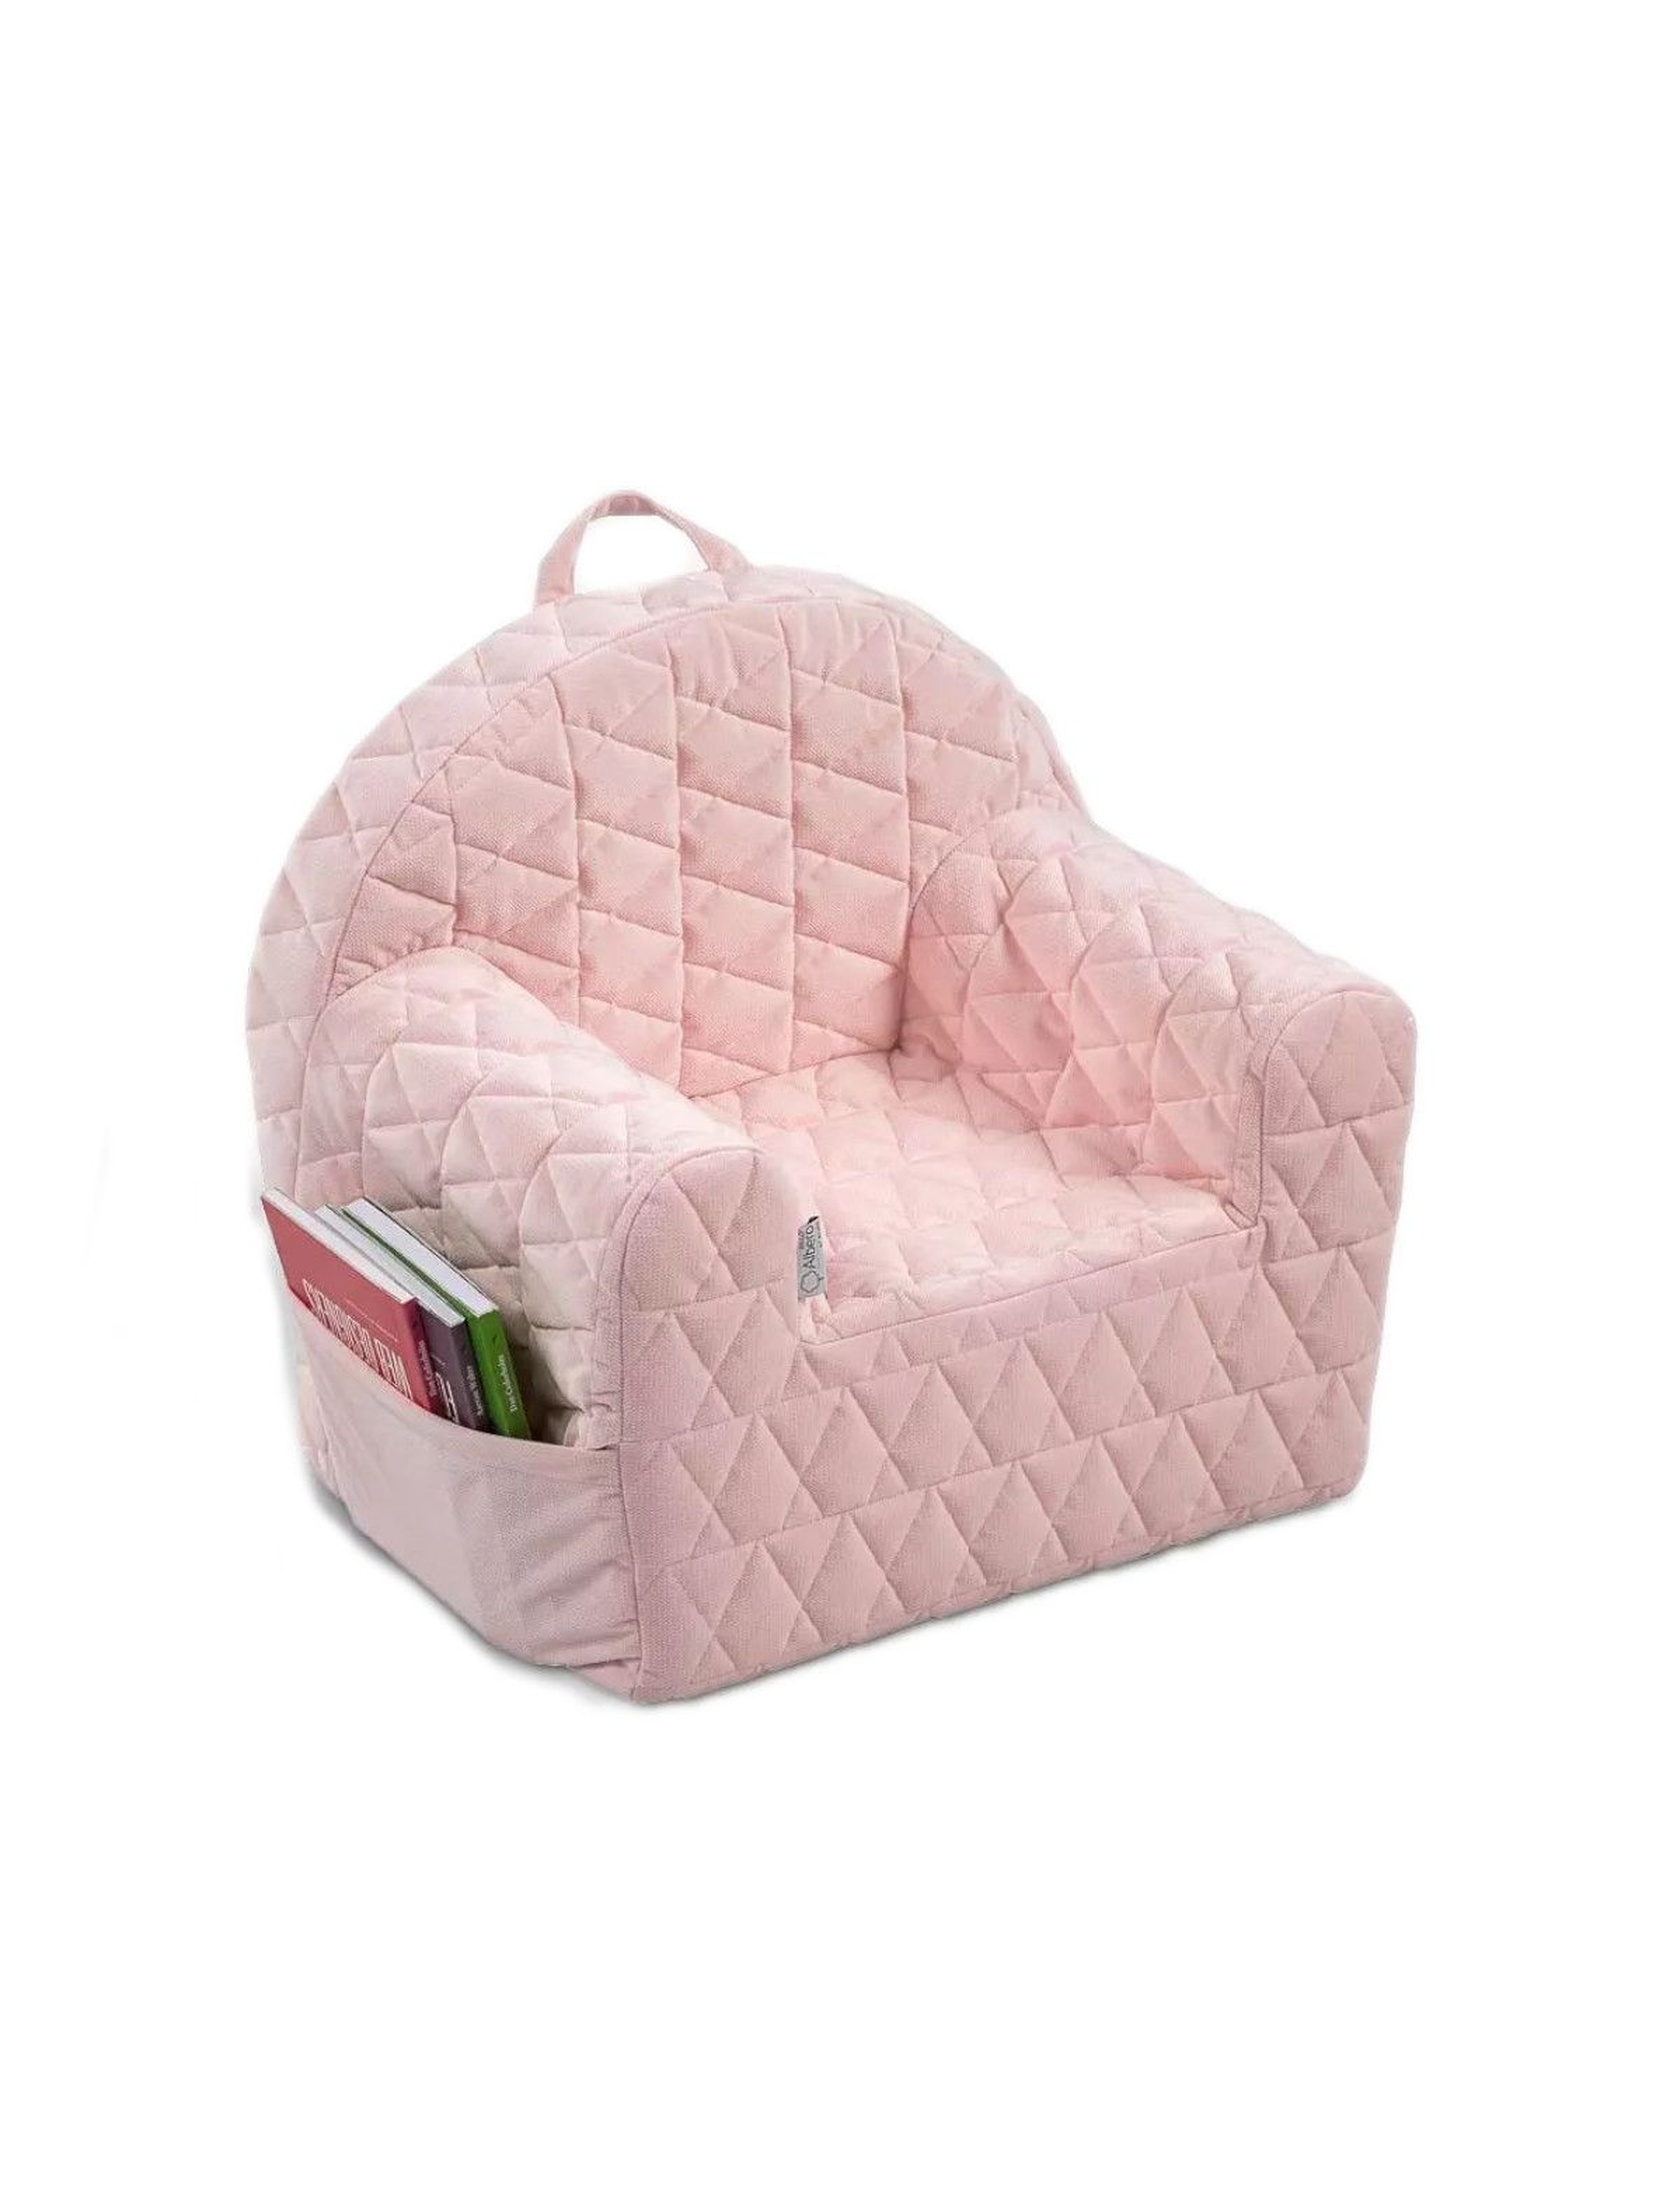 Fotelik piankowy Velvet w kolorze różowym